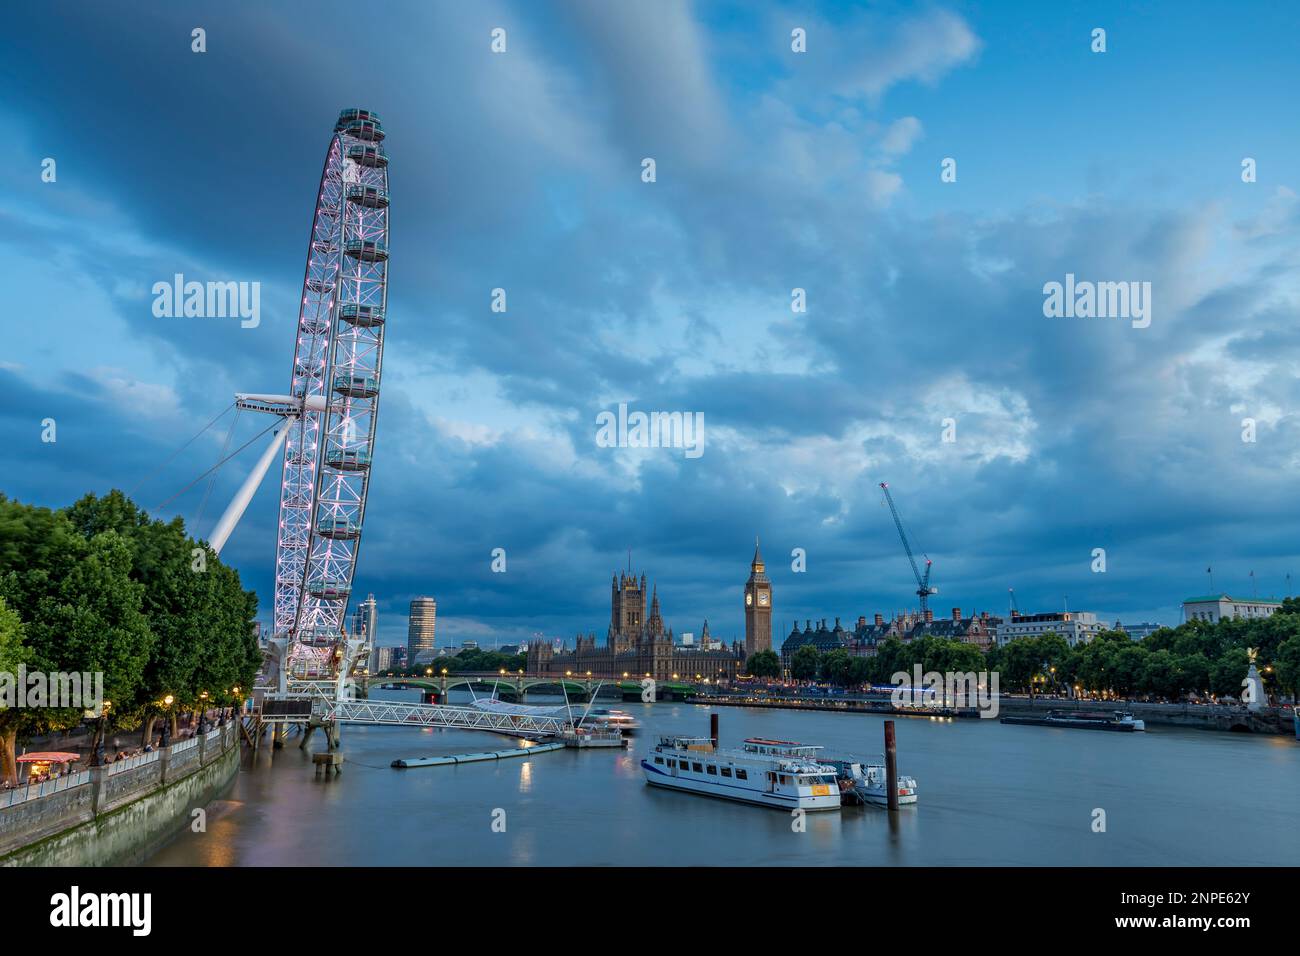 Le jour passe à la nuit tandis que la lumière s'estompe au-dessus du London Eye et de la Tamise à Londres. Banque D'Images